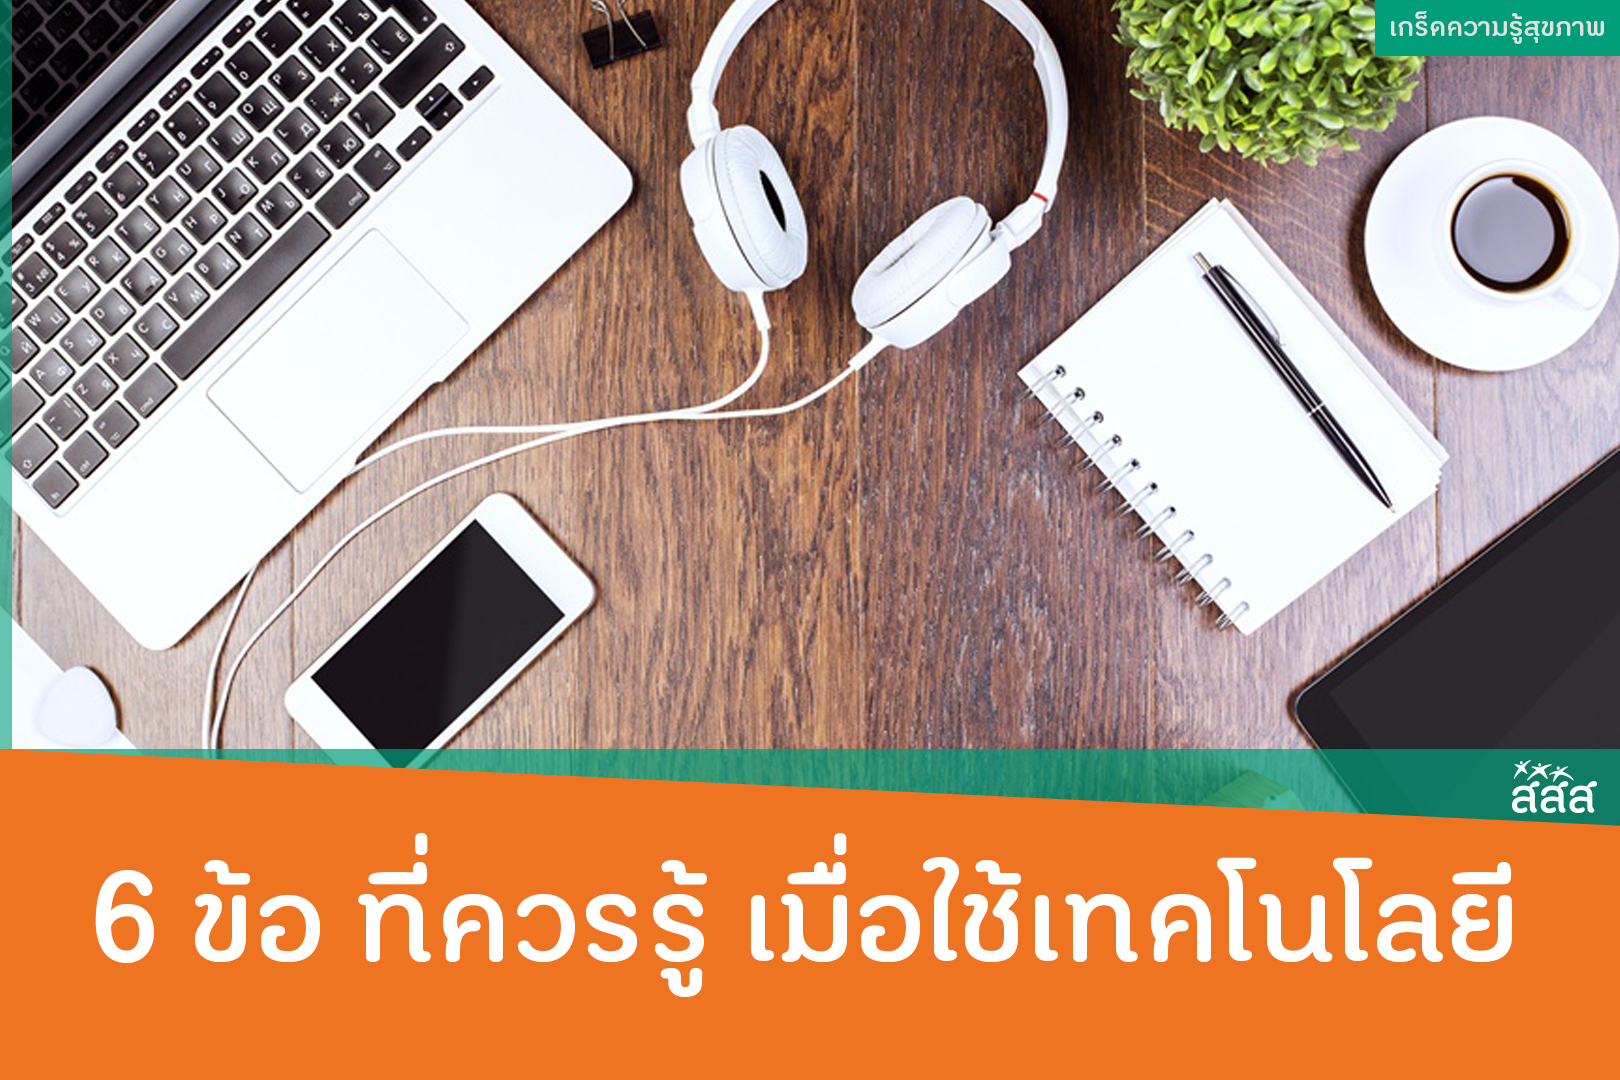 6 ข้อ ที่ควรรู้ เมื่อใช้เทคโนโลยี thaihealth